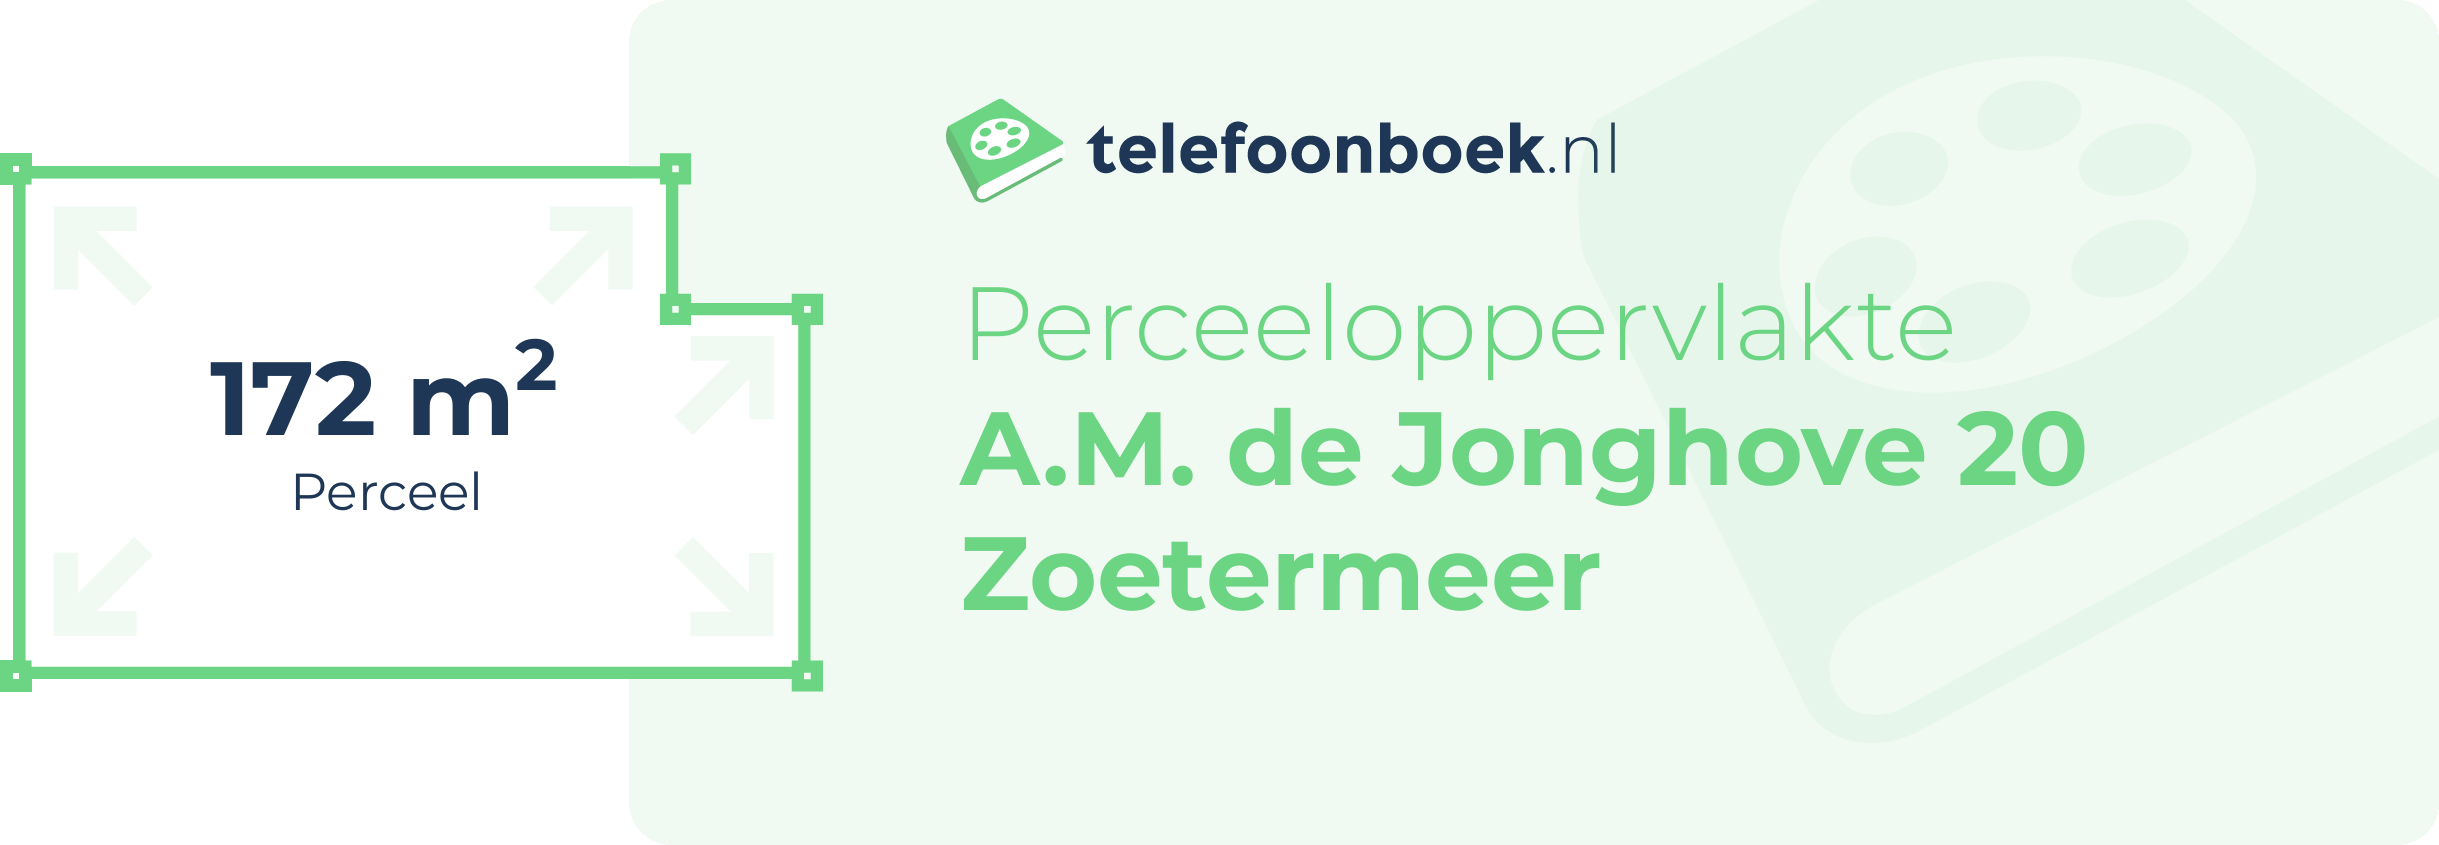 Perceeloppervlakte A.M. De Jonghove 20 Zoetermeer